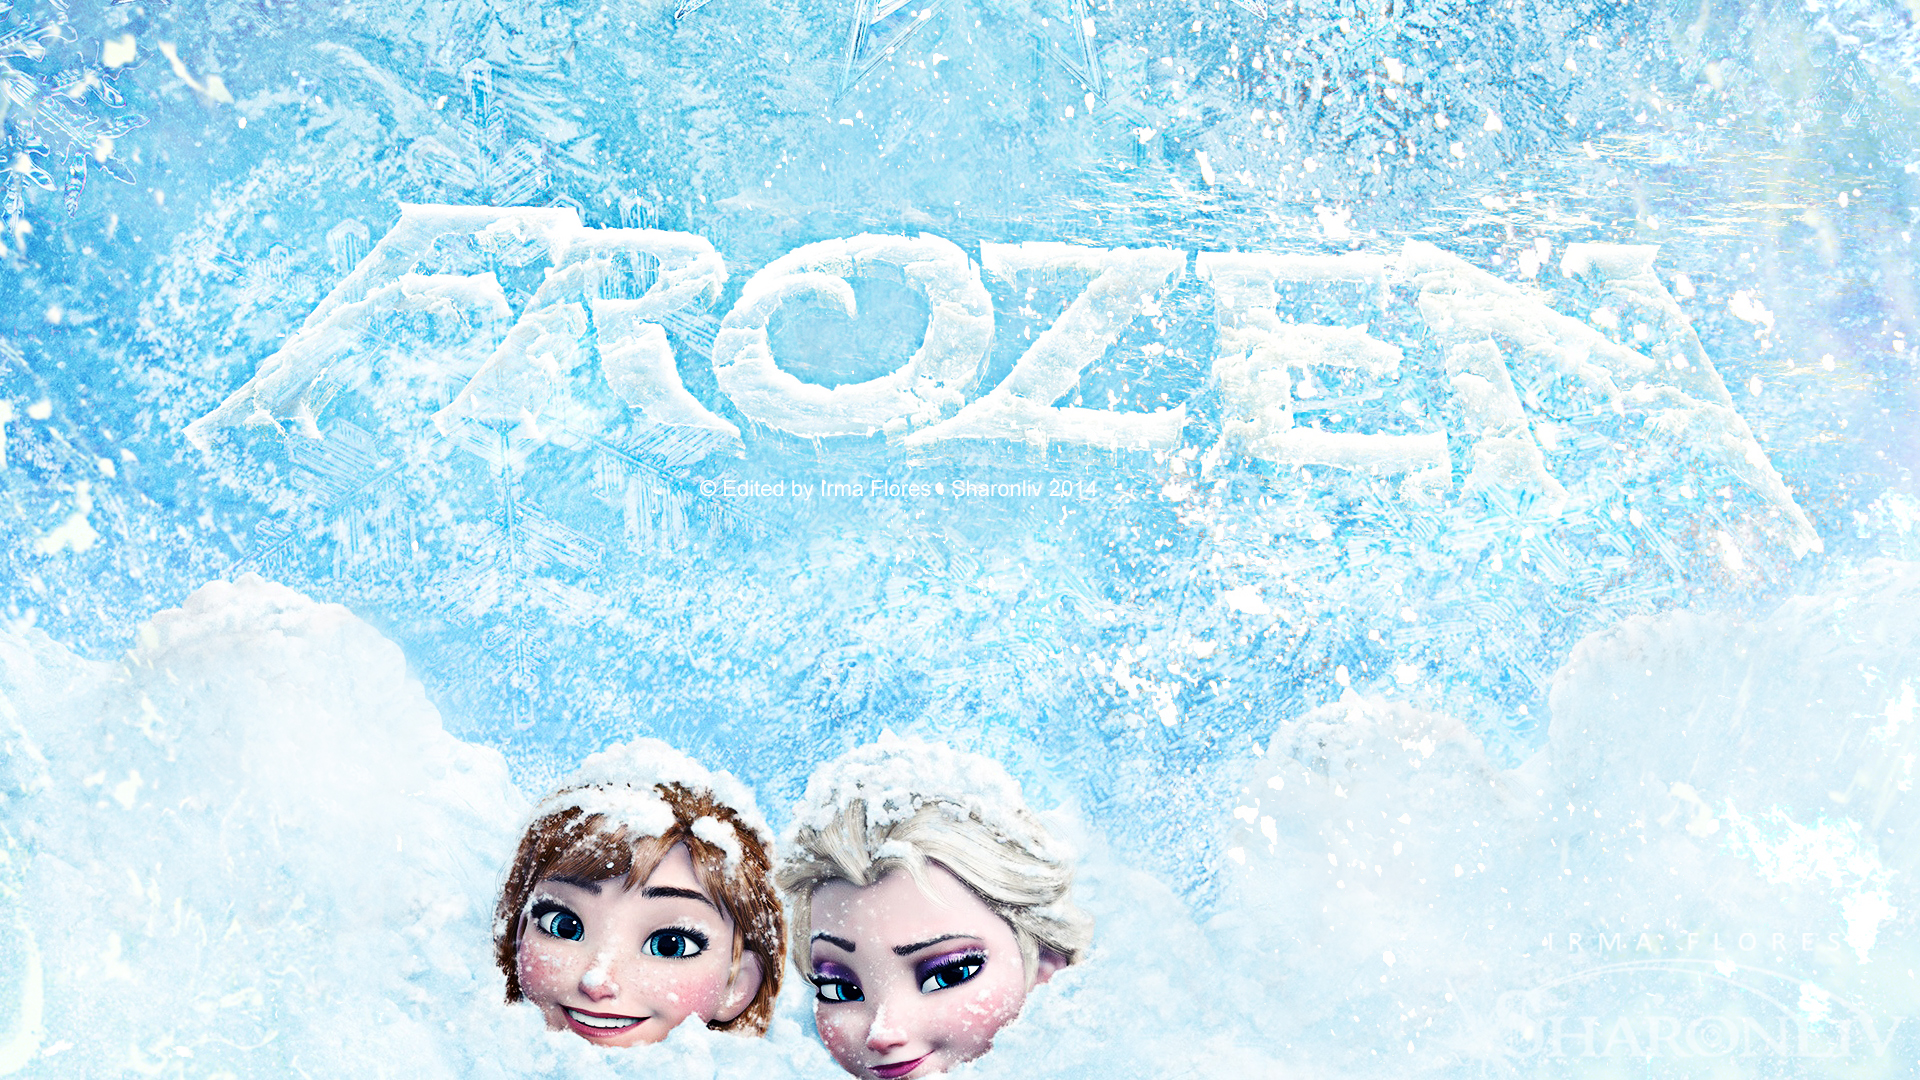 Descarga gratuita de fondo de pantalla para móvil de Nieve, Películas, Frozen: El Reino Del Hielo, Congelado (Película), Ana (Congelada), Elsa (Congelada).